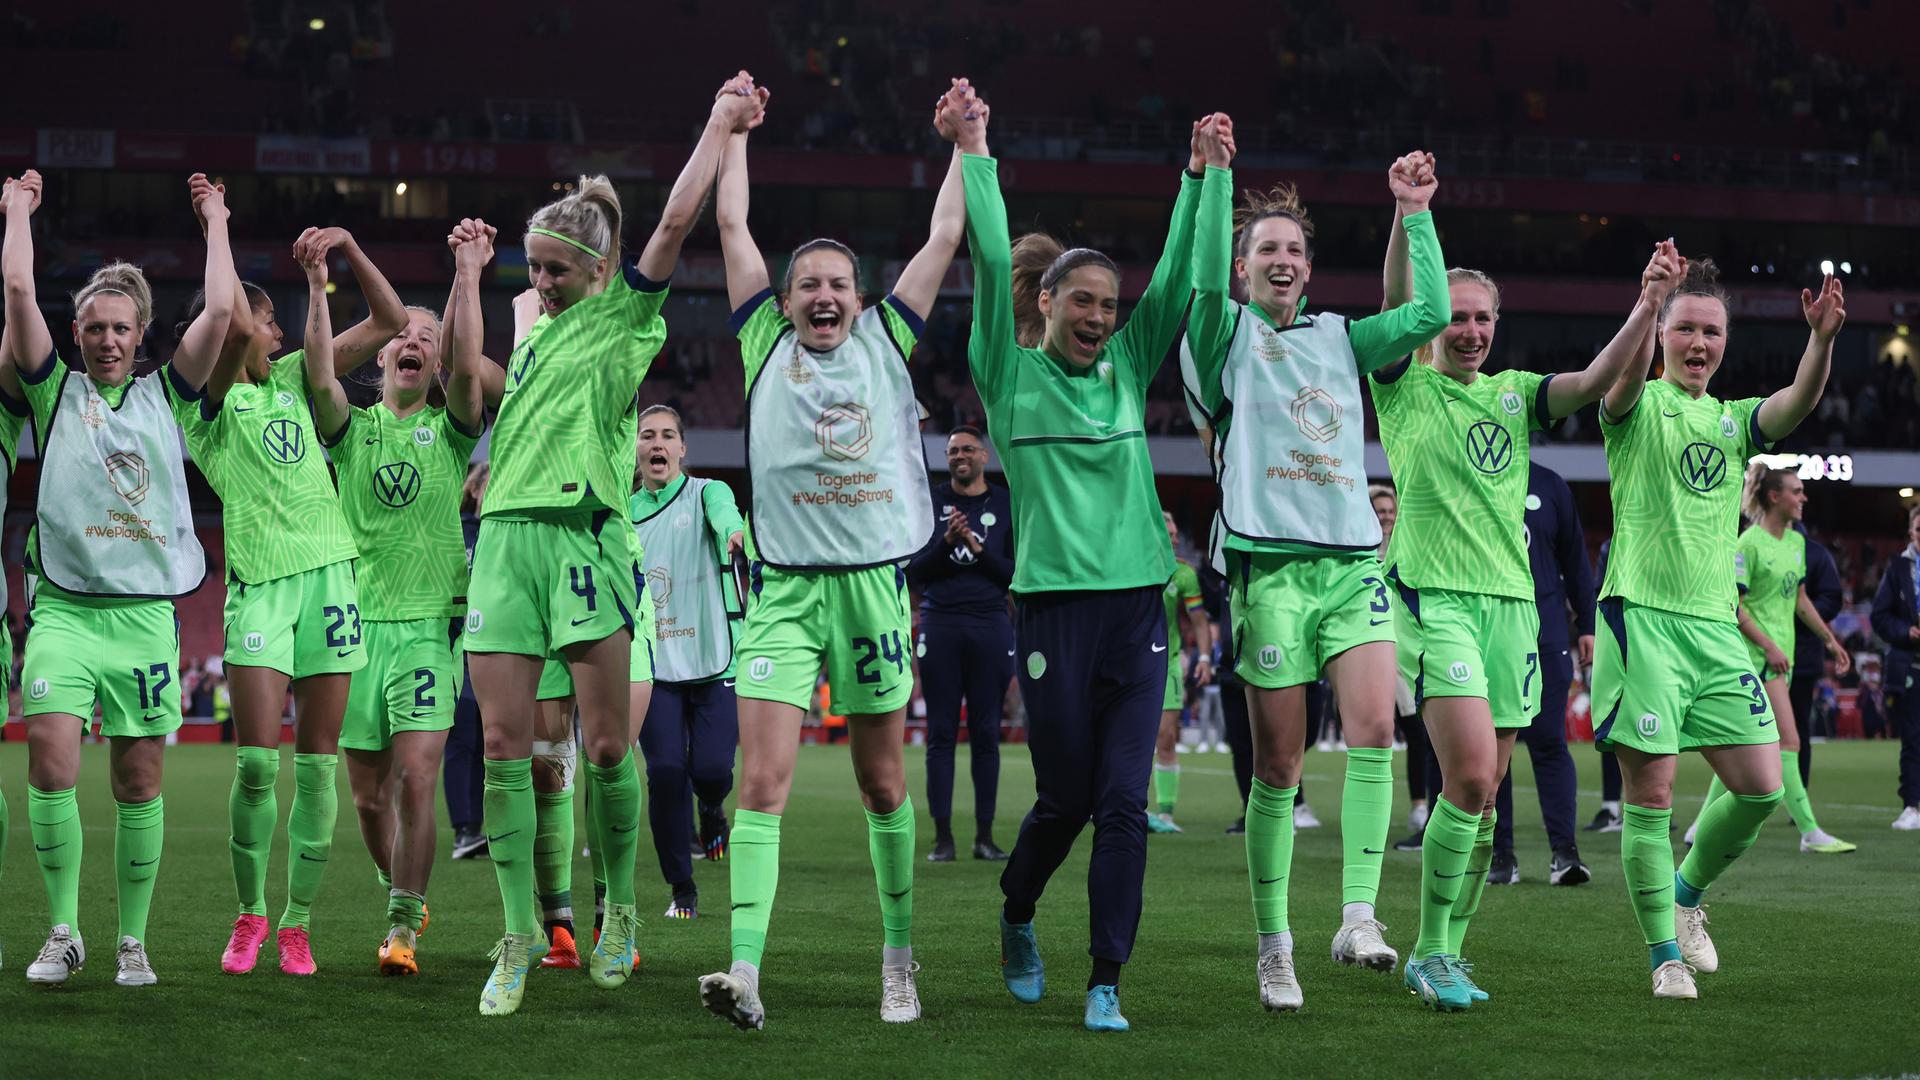 Zu sehen sind die Fußballerinnen des VfL Wolfsburg. Sie feiern ihren Sieg im Halb-Finale von der Champions-League.